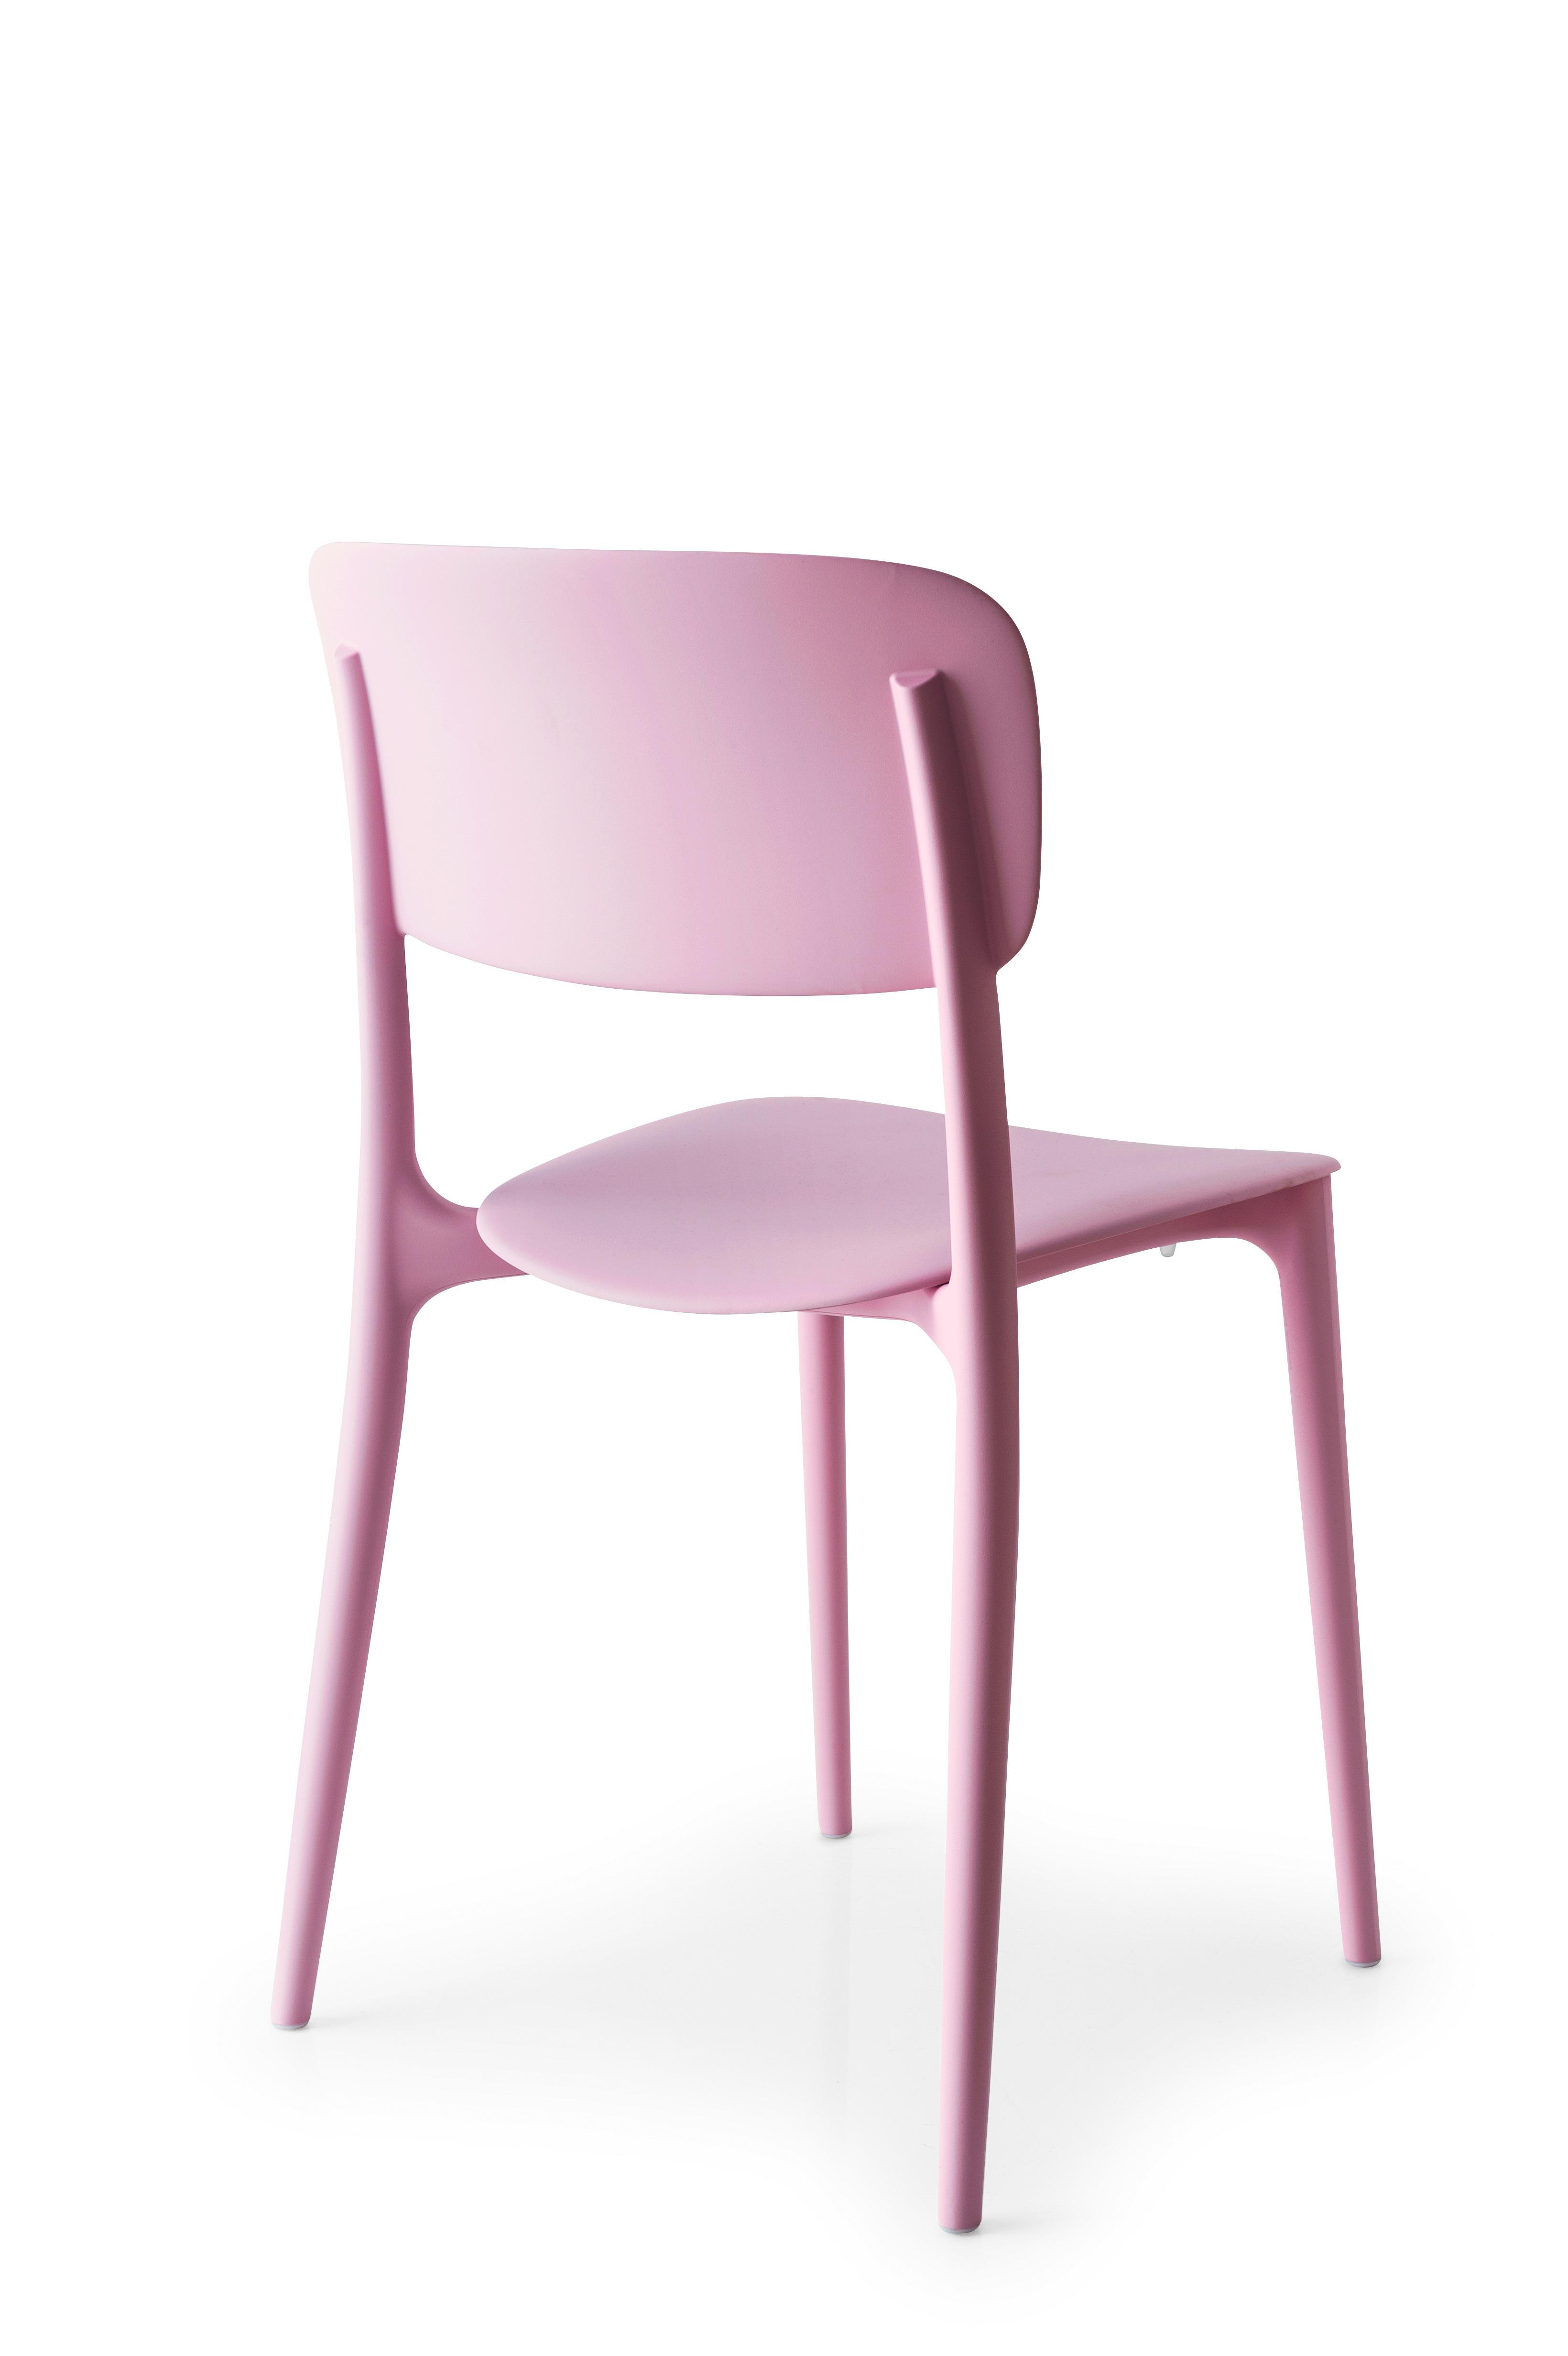 Una sedia rosa per sostenere la campagna LILT contro il tumore al